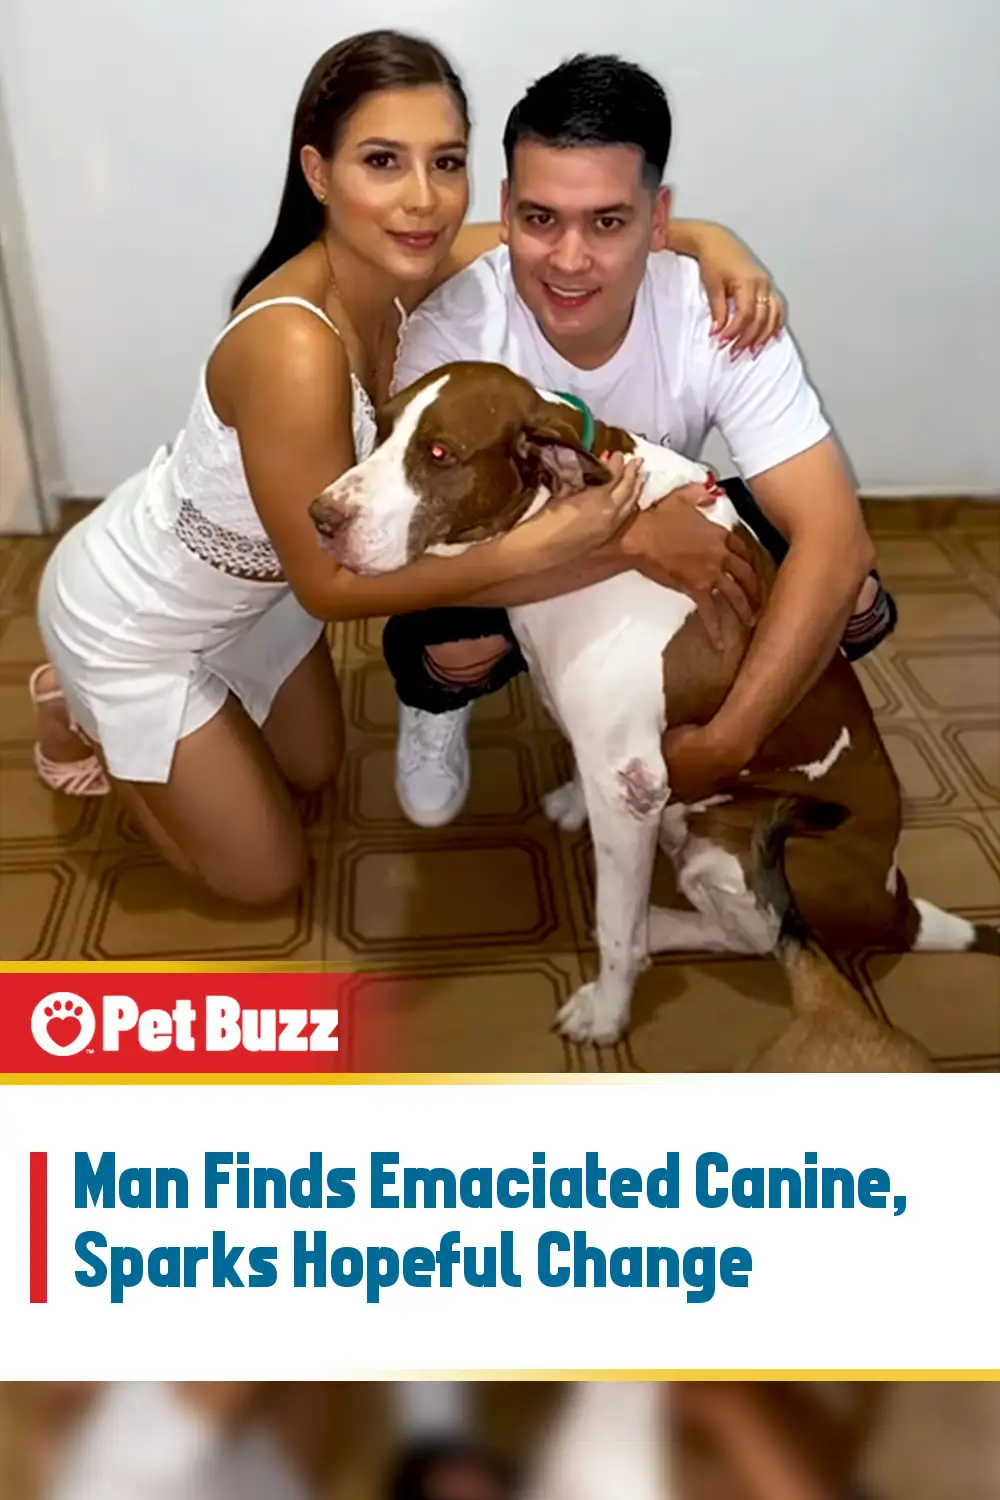 Man Finds Emaciated Canine, Sparks Hopeful Change